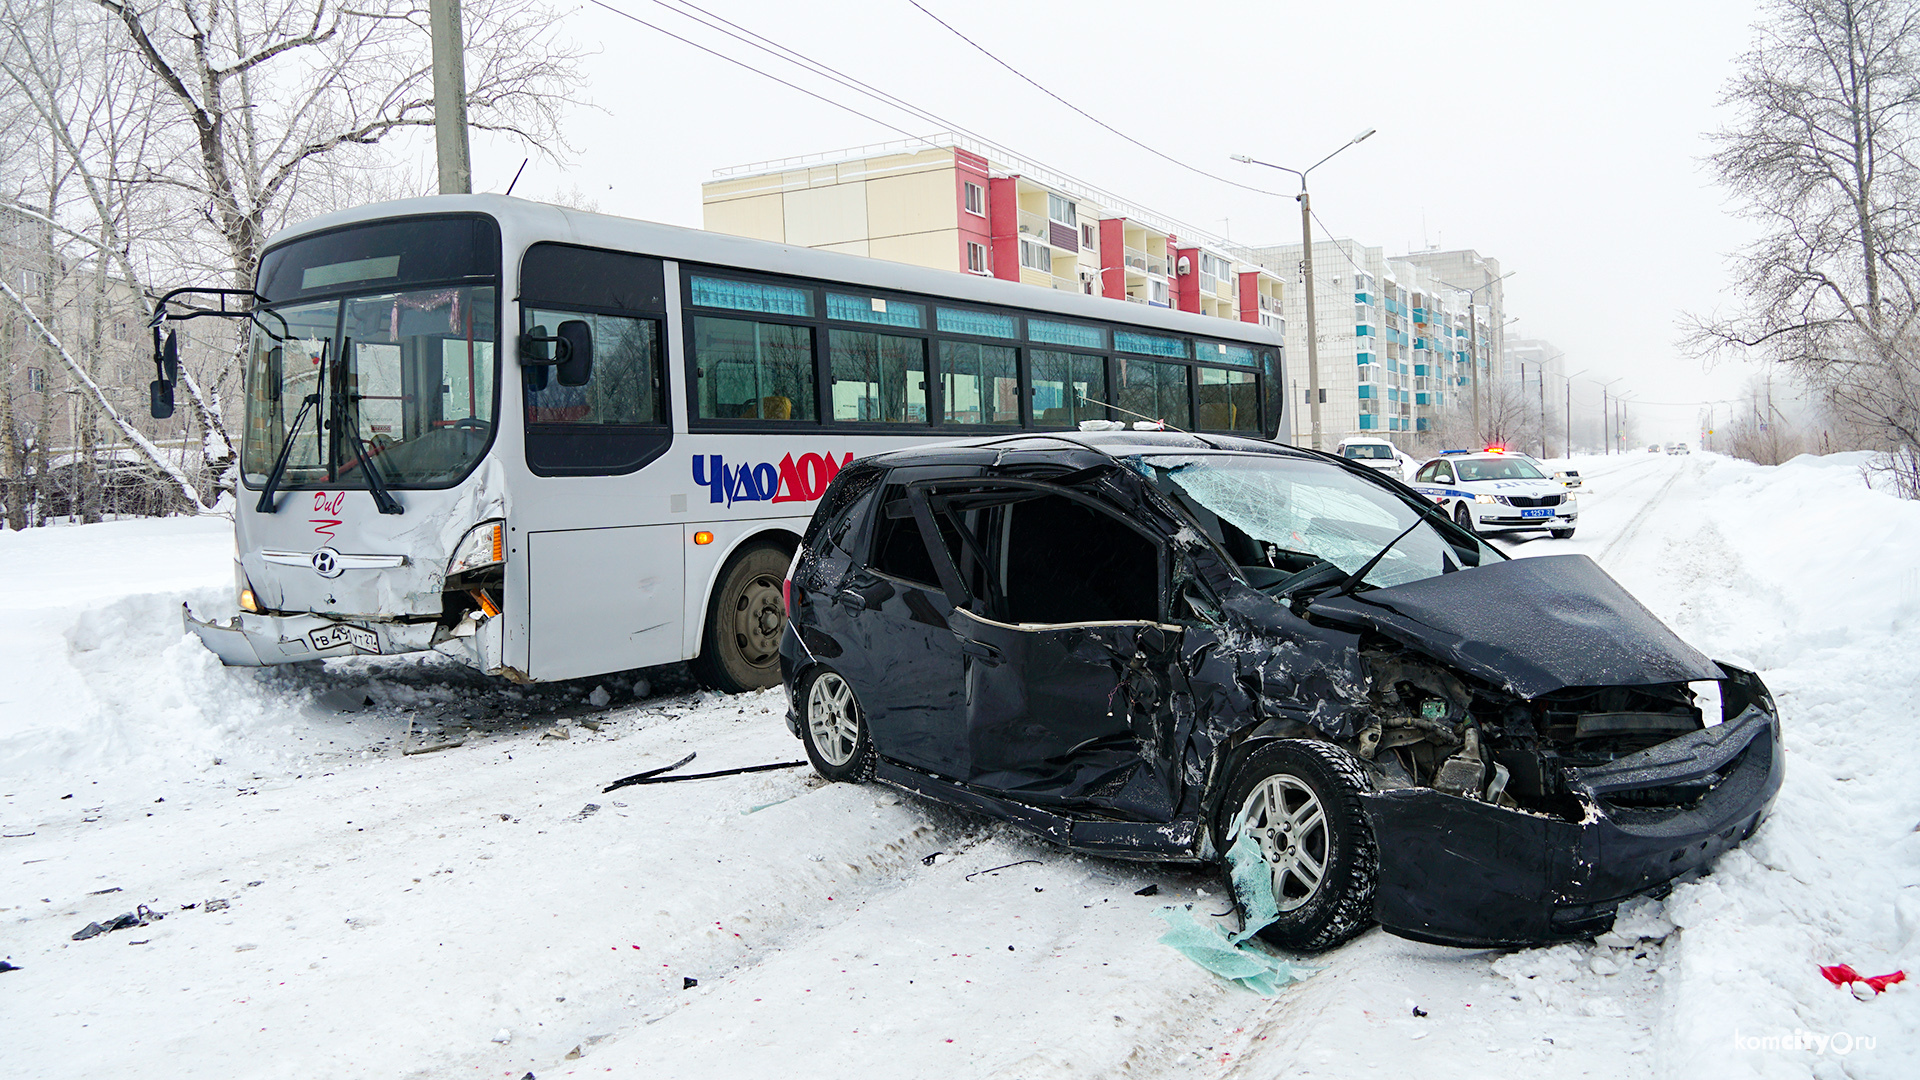 Два человека получили травмы в авариях на Гагарина, случившихся в одном и том же месте на плохо чищенной дороге